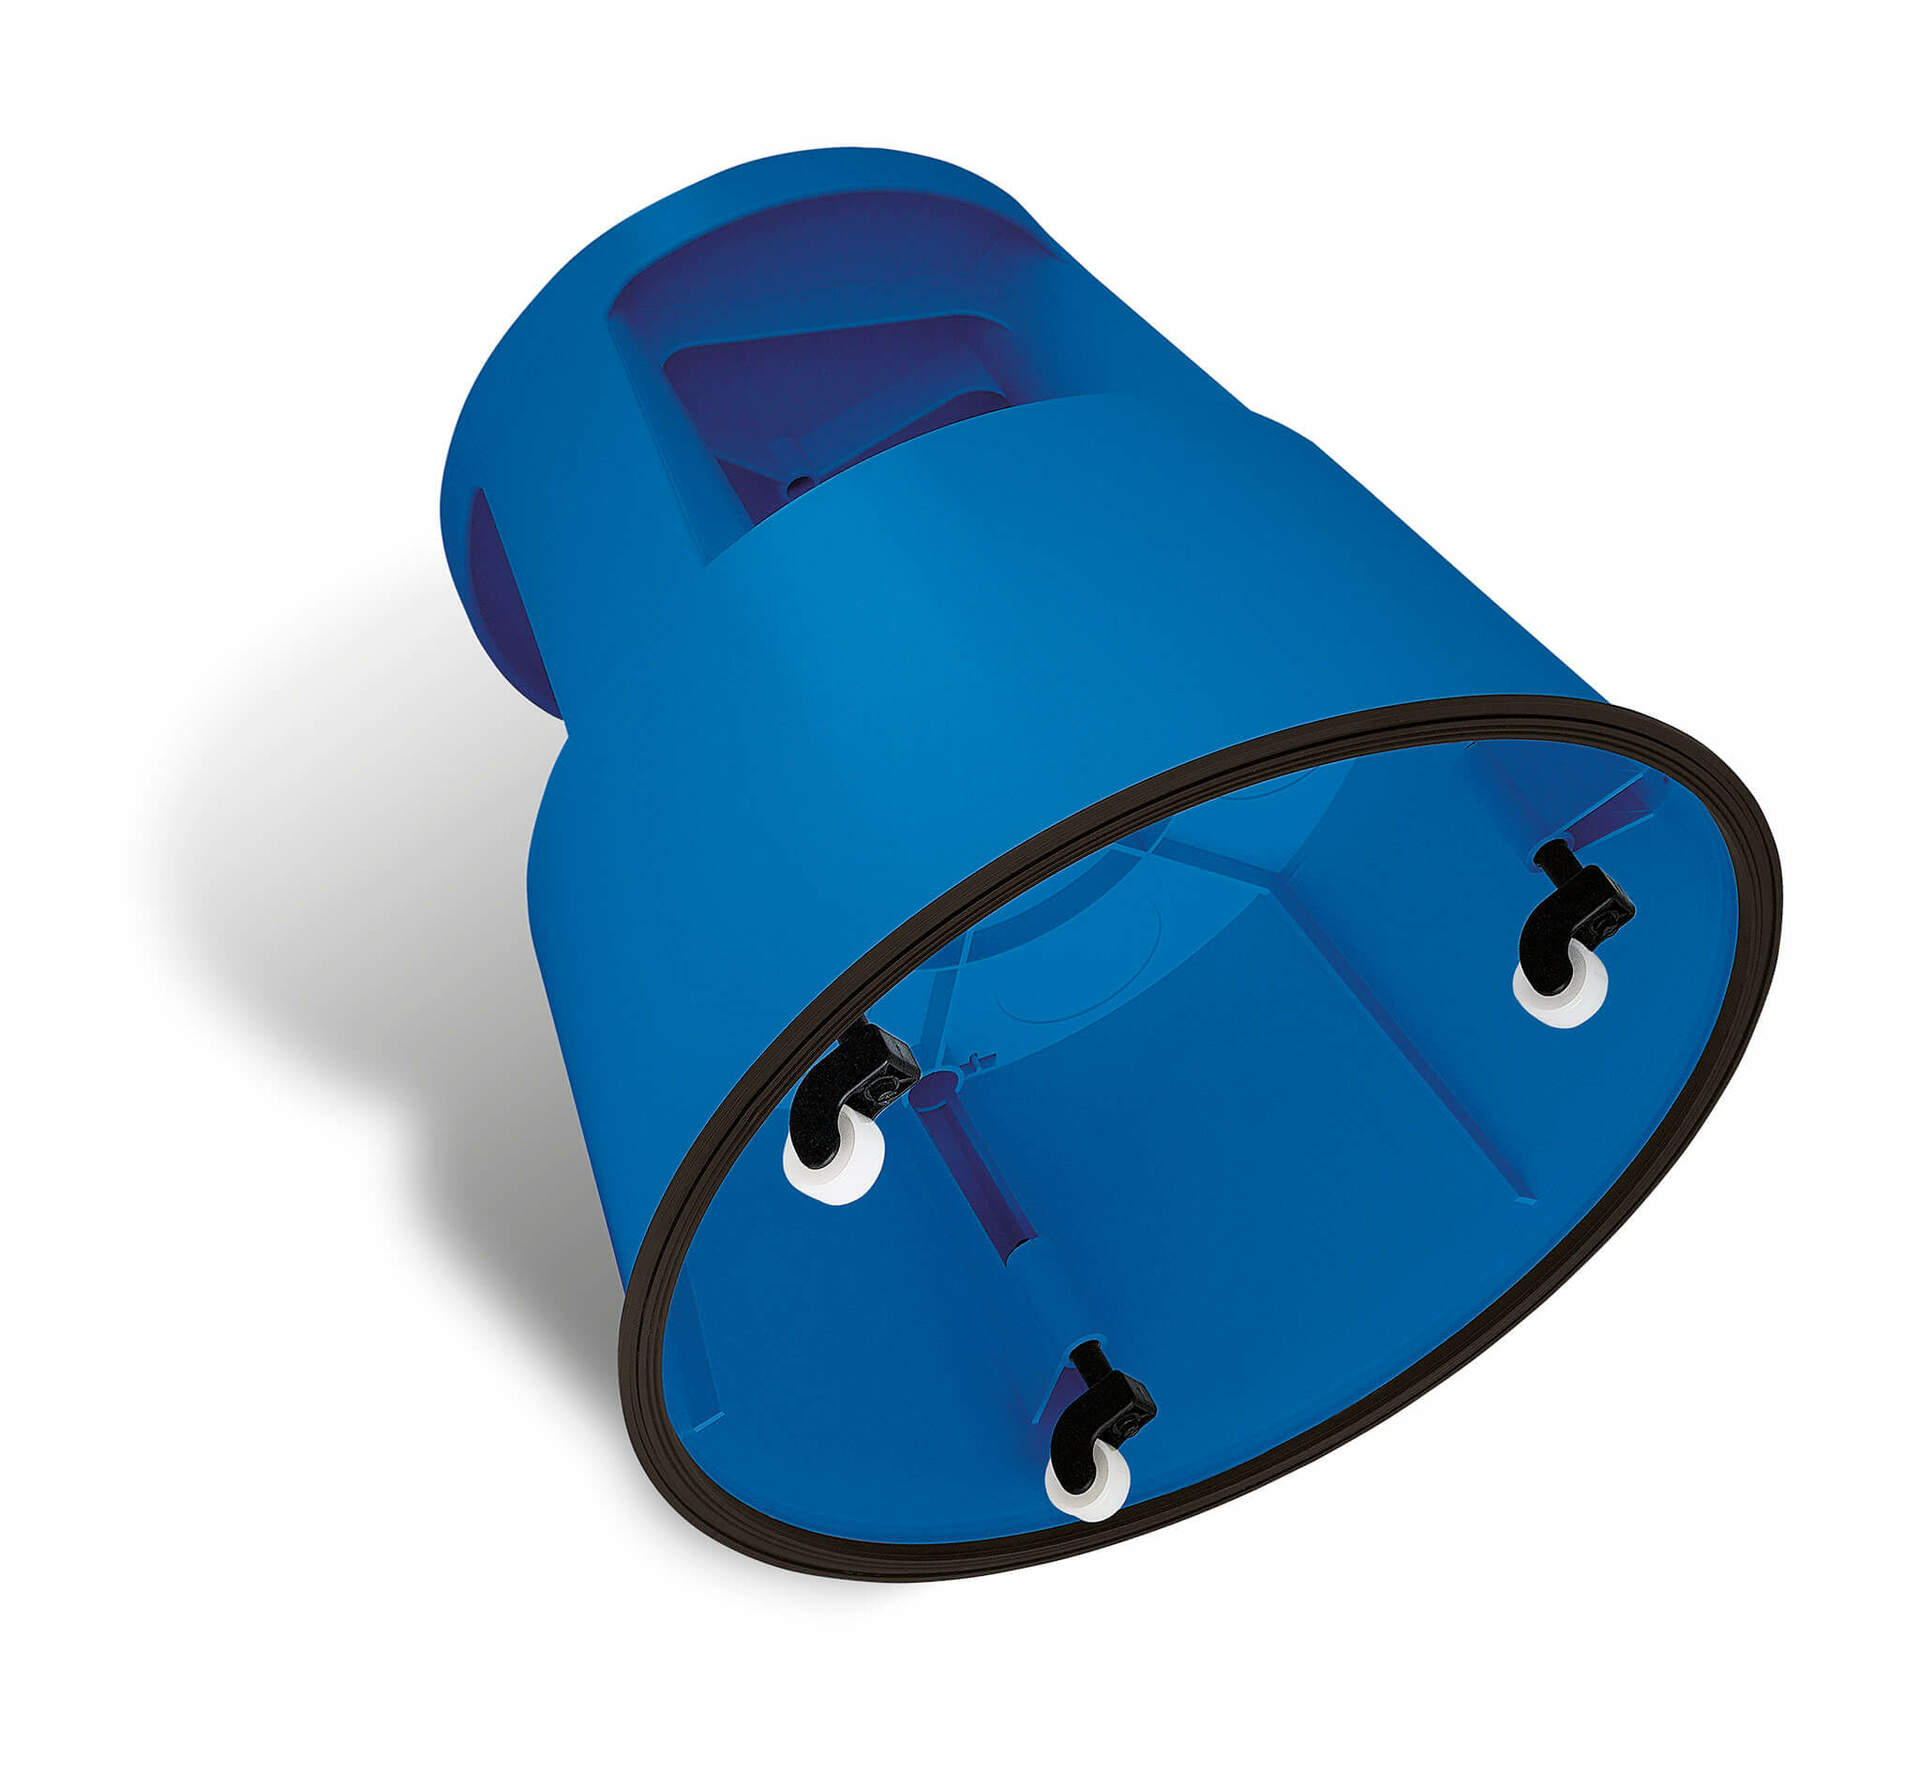 Blauer WEDO-Schiebelift aus Kunststoff